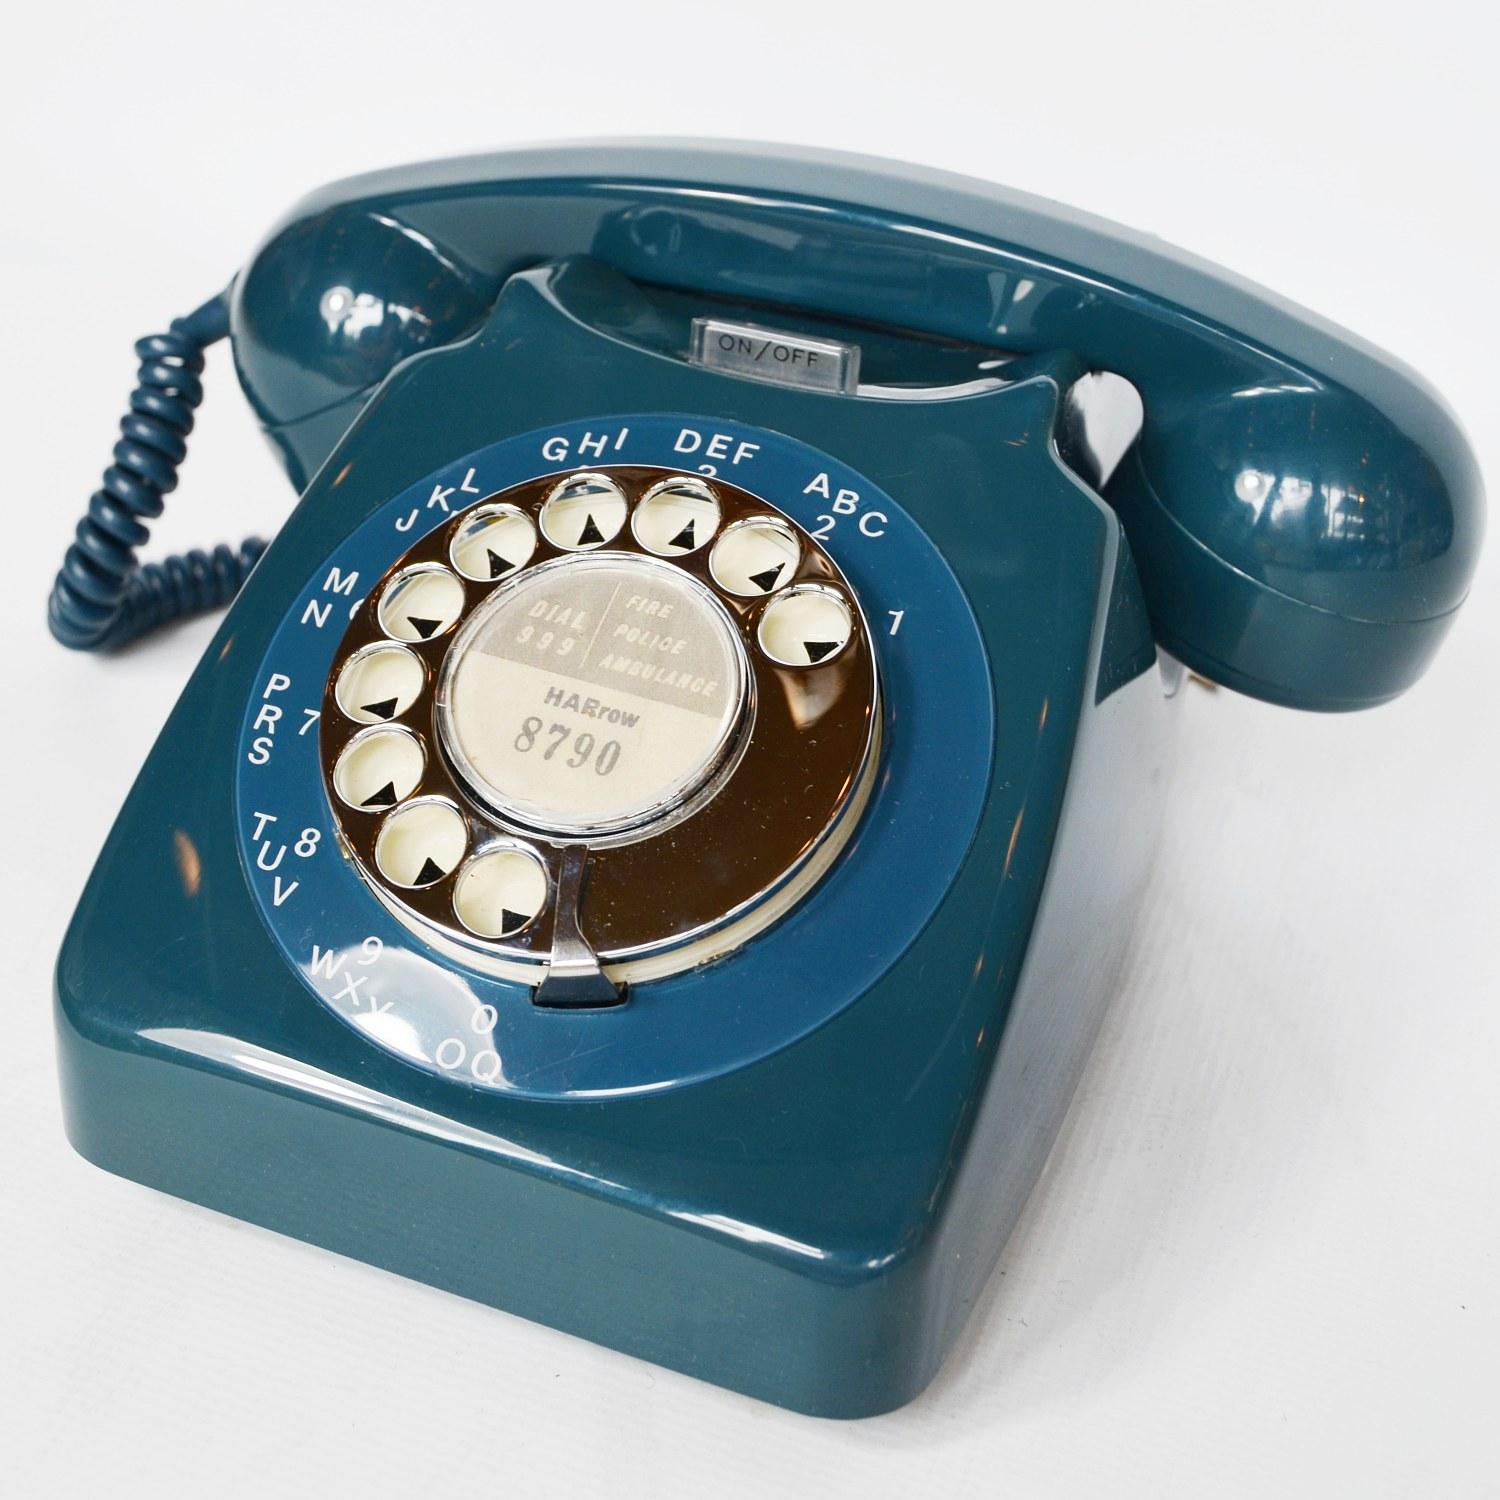 1970 telephone